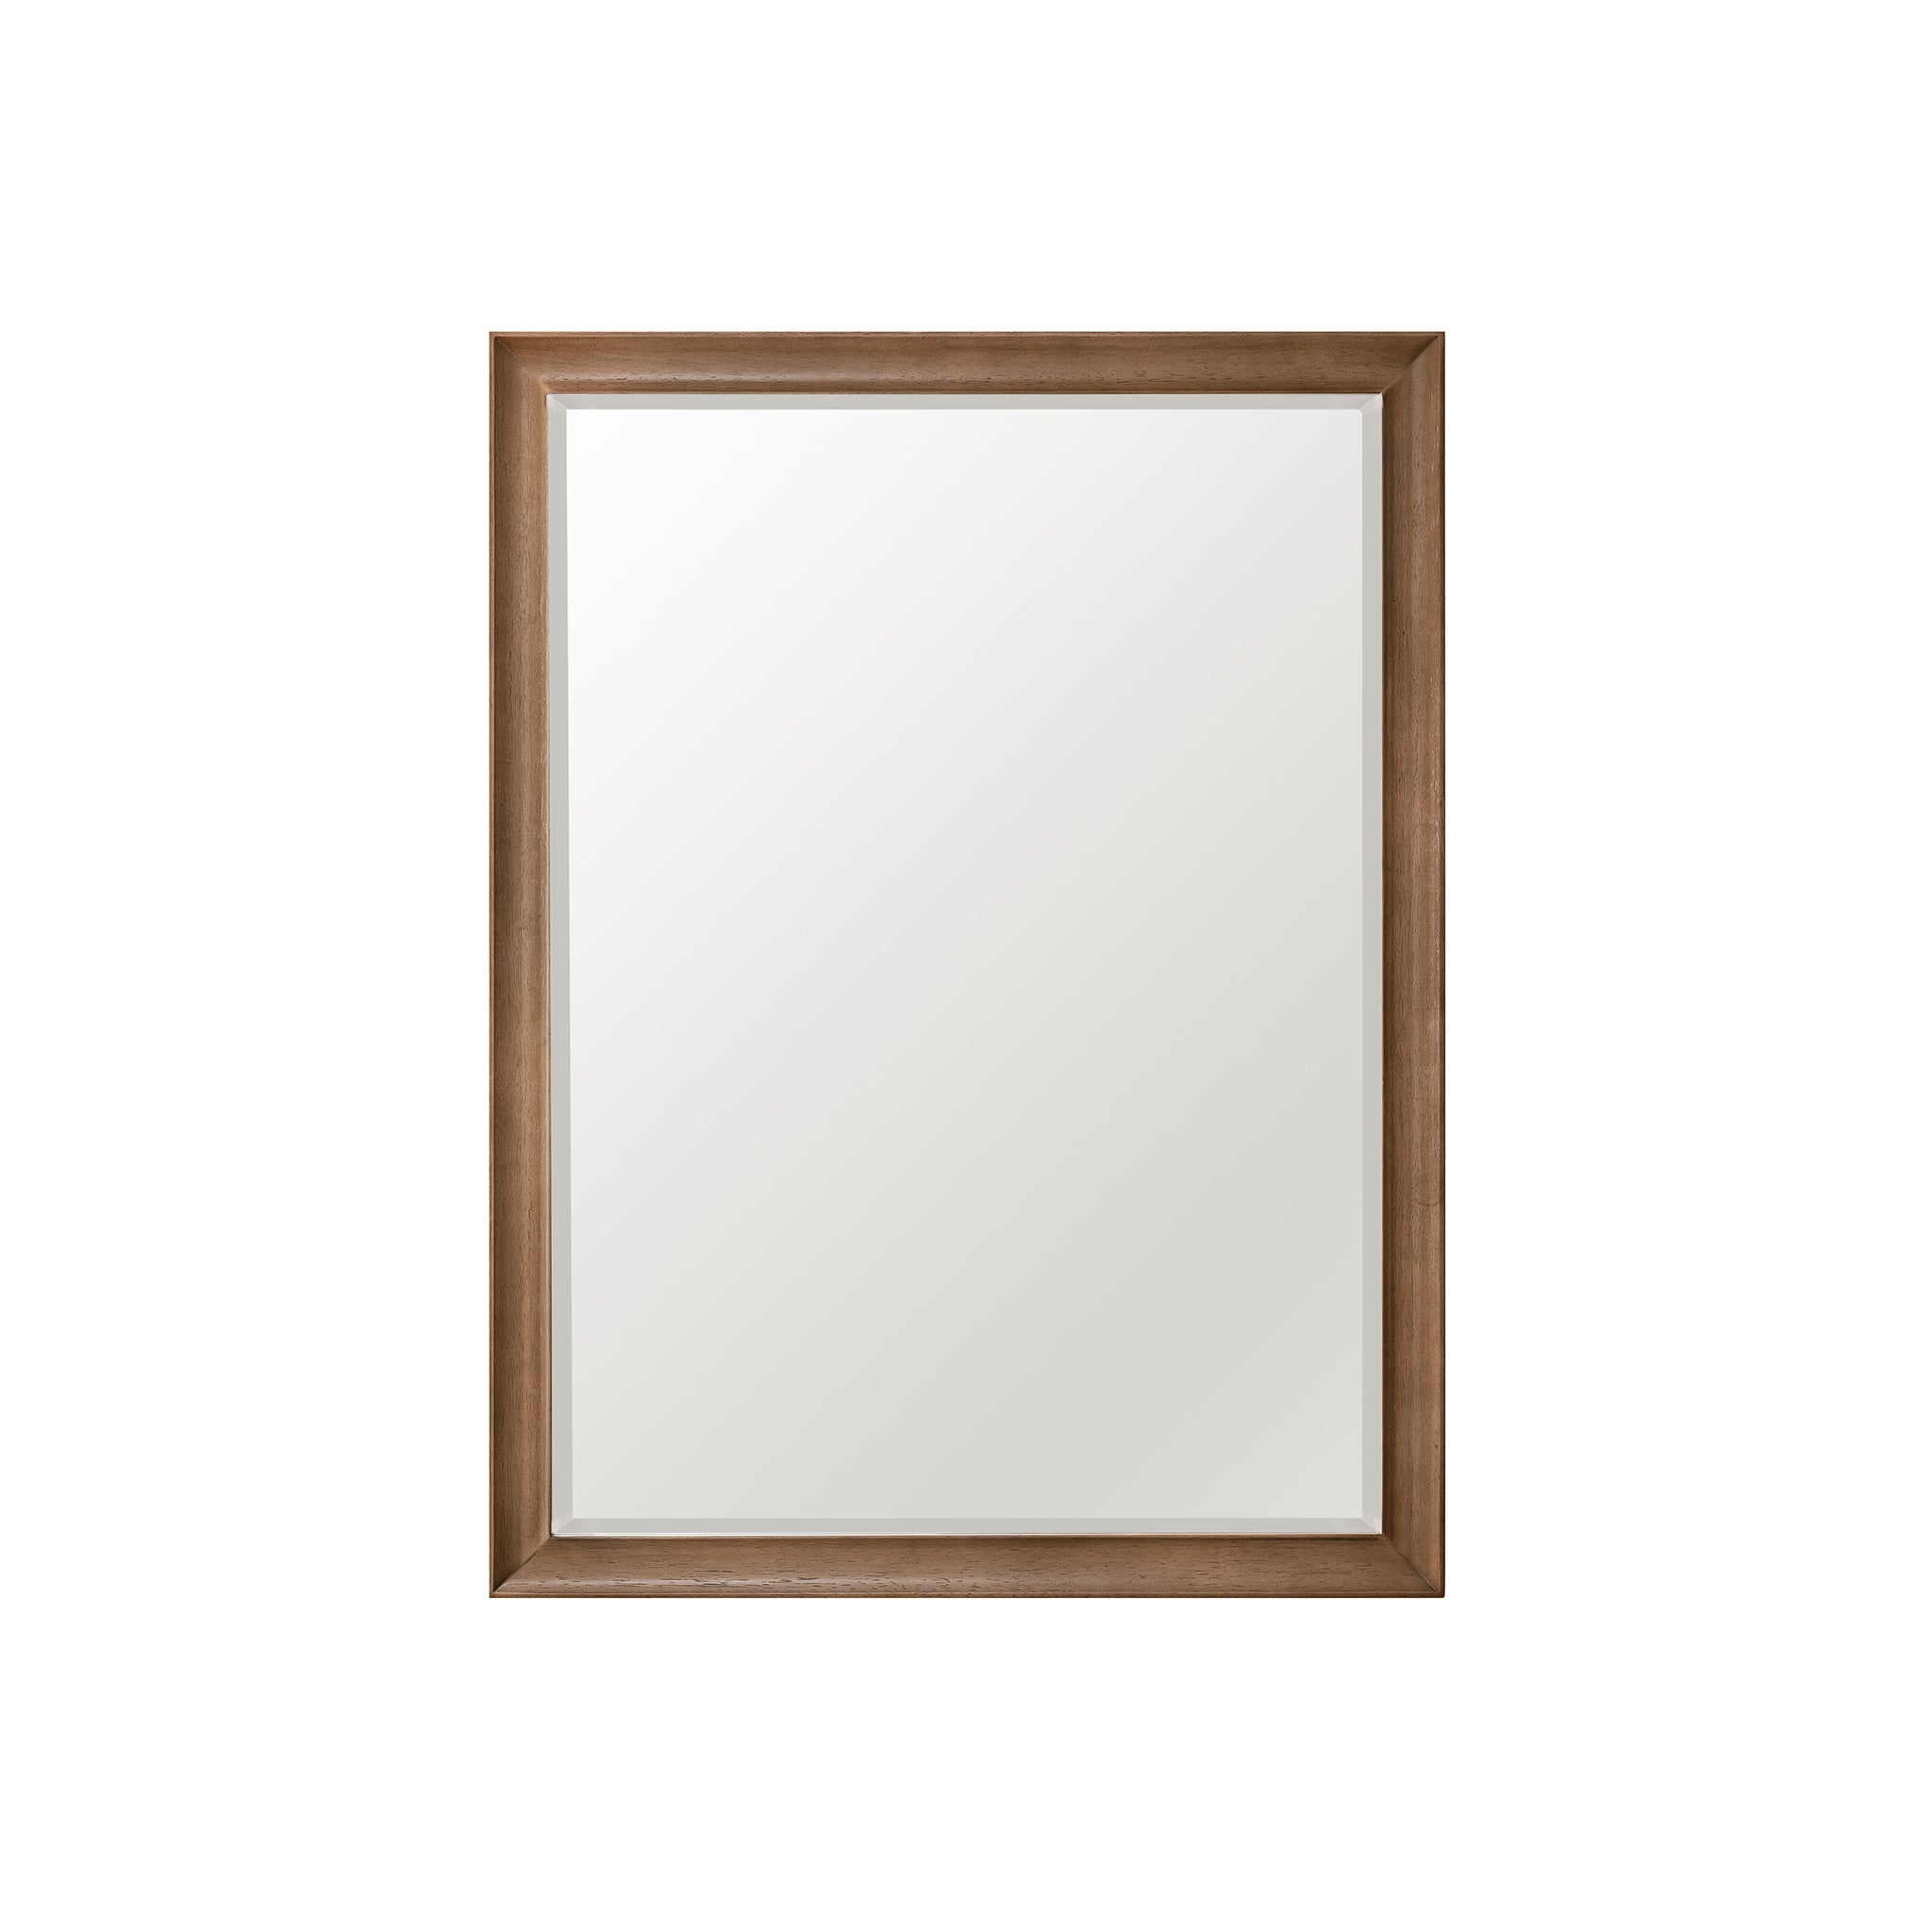 James Martin Vanities Glenbrooke 30" Mirror, Whitewashed Walnut